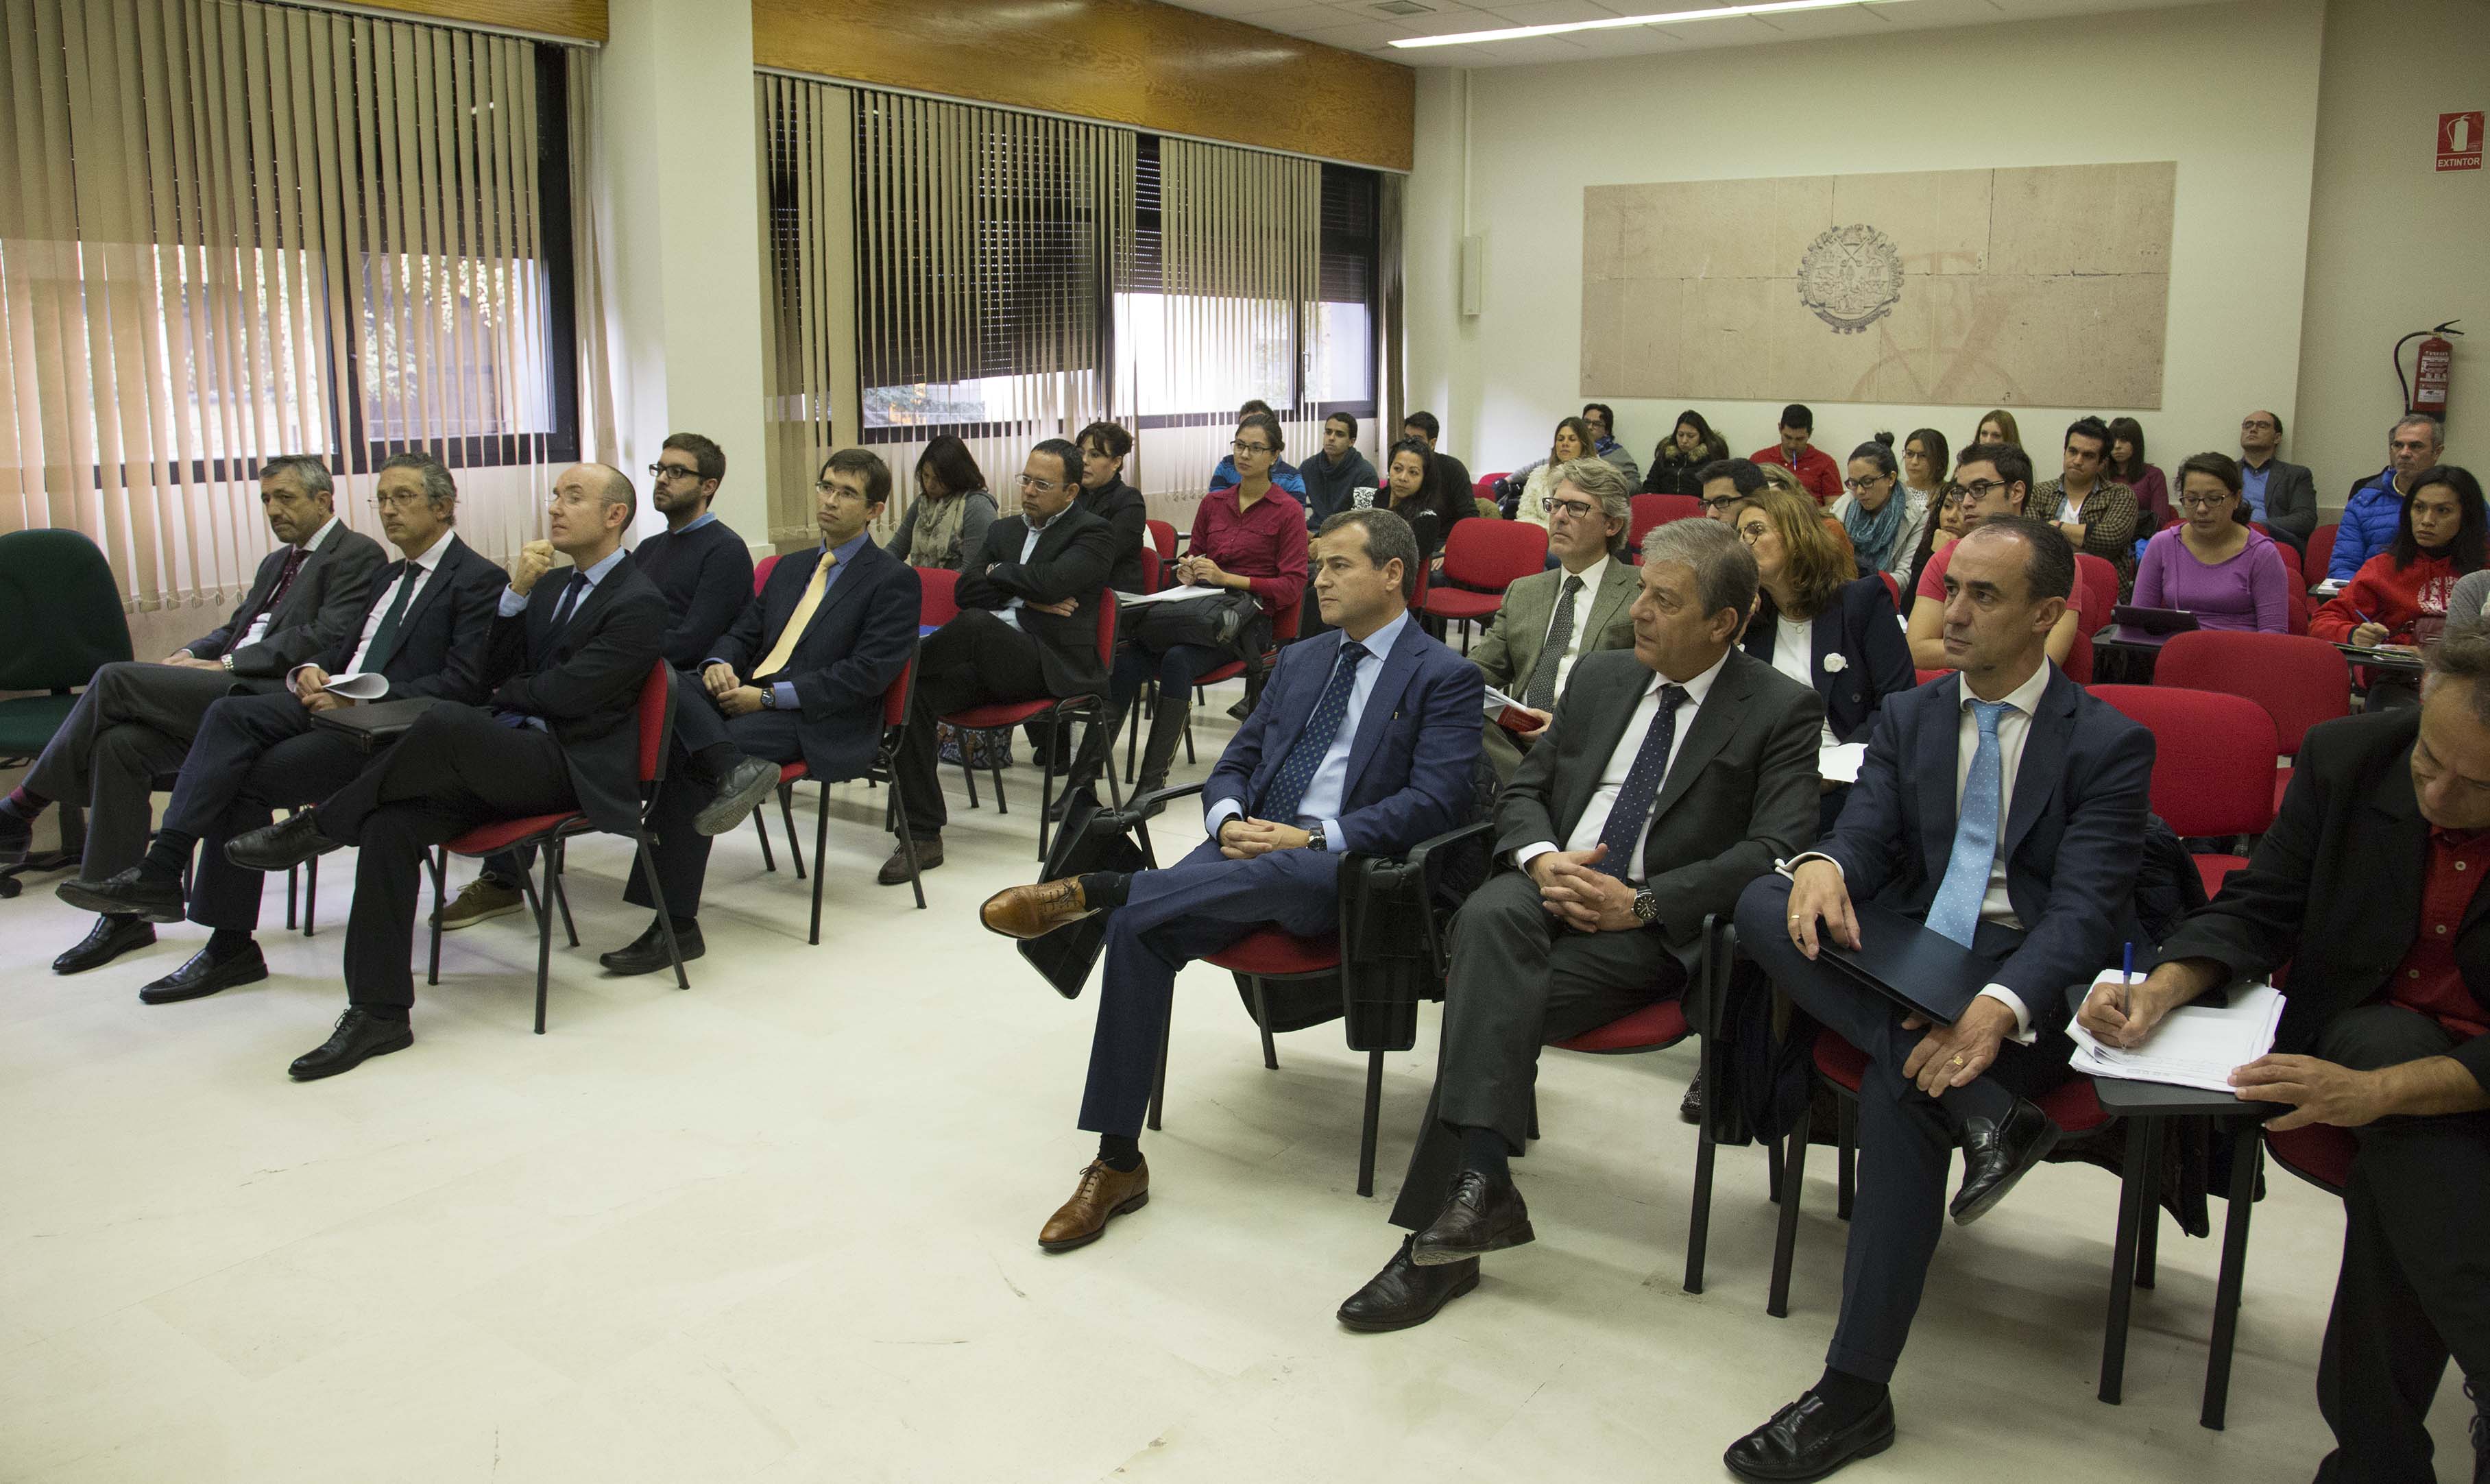 Banco CEISS, Fundación Bancaria Unicaja y Universidad de Salamanca organizan una jornada sobre educación financiera en el marco del ‘Proyecto Edufinet’ 